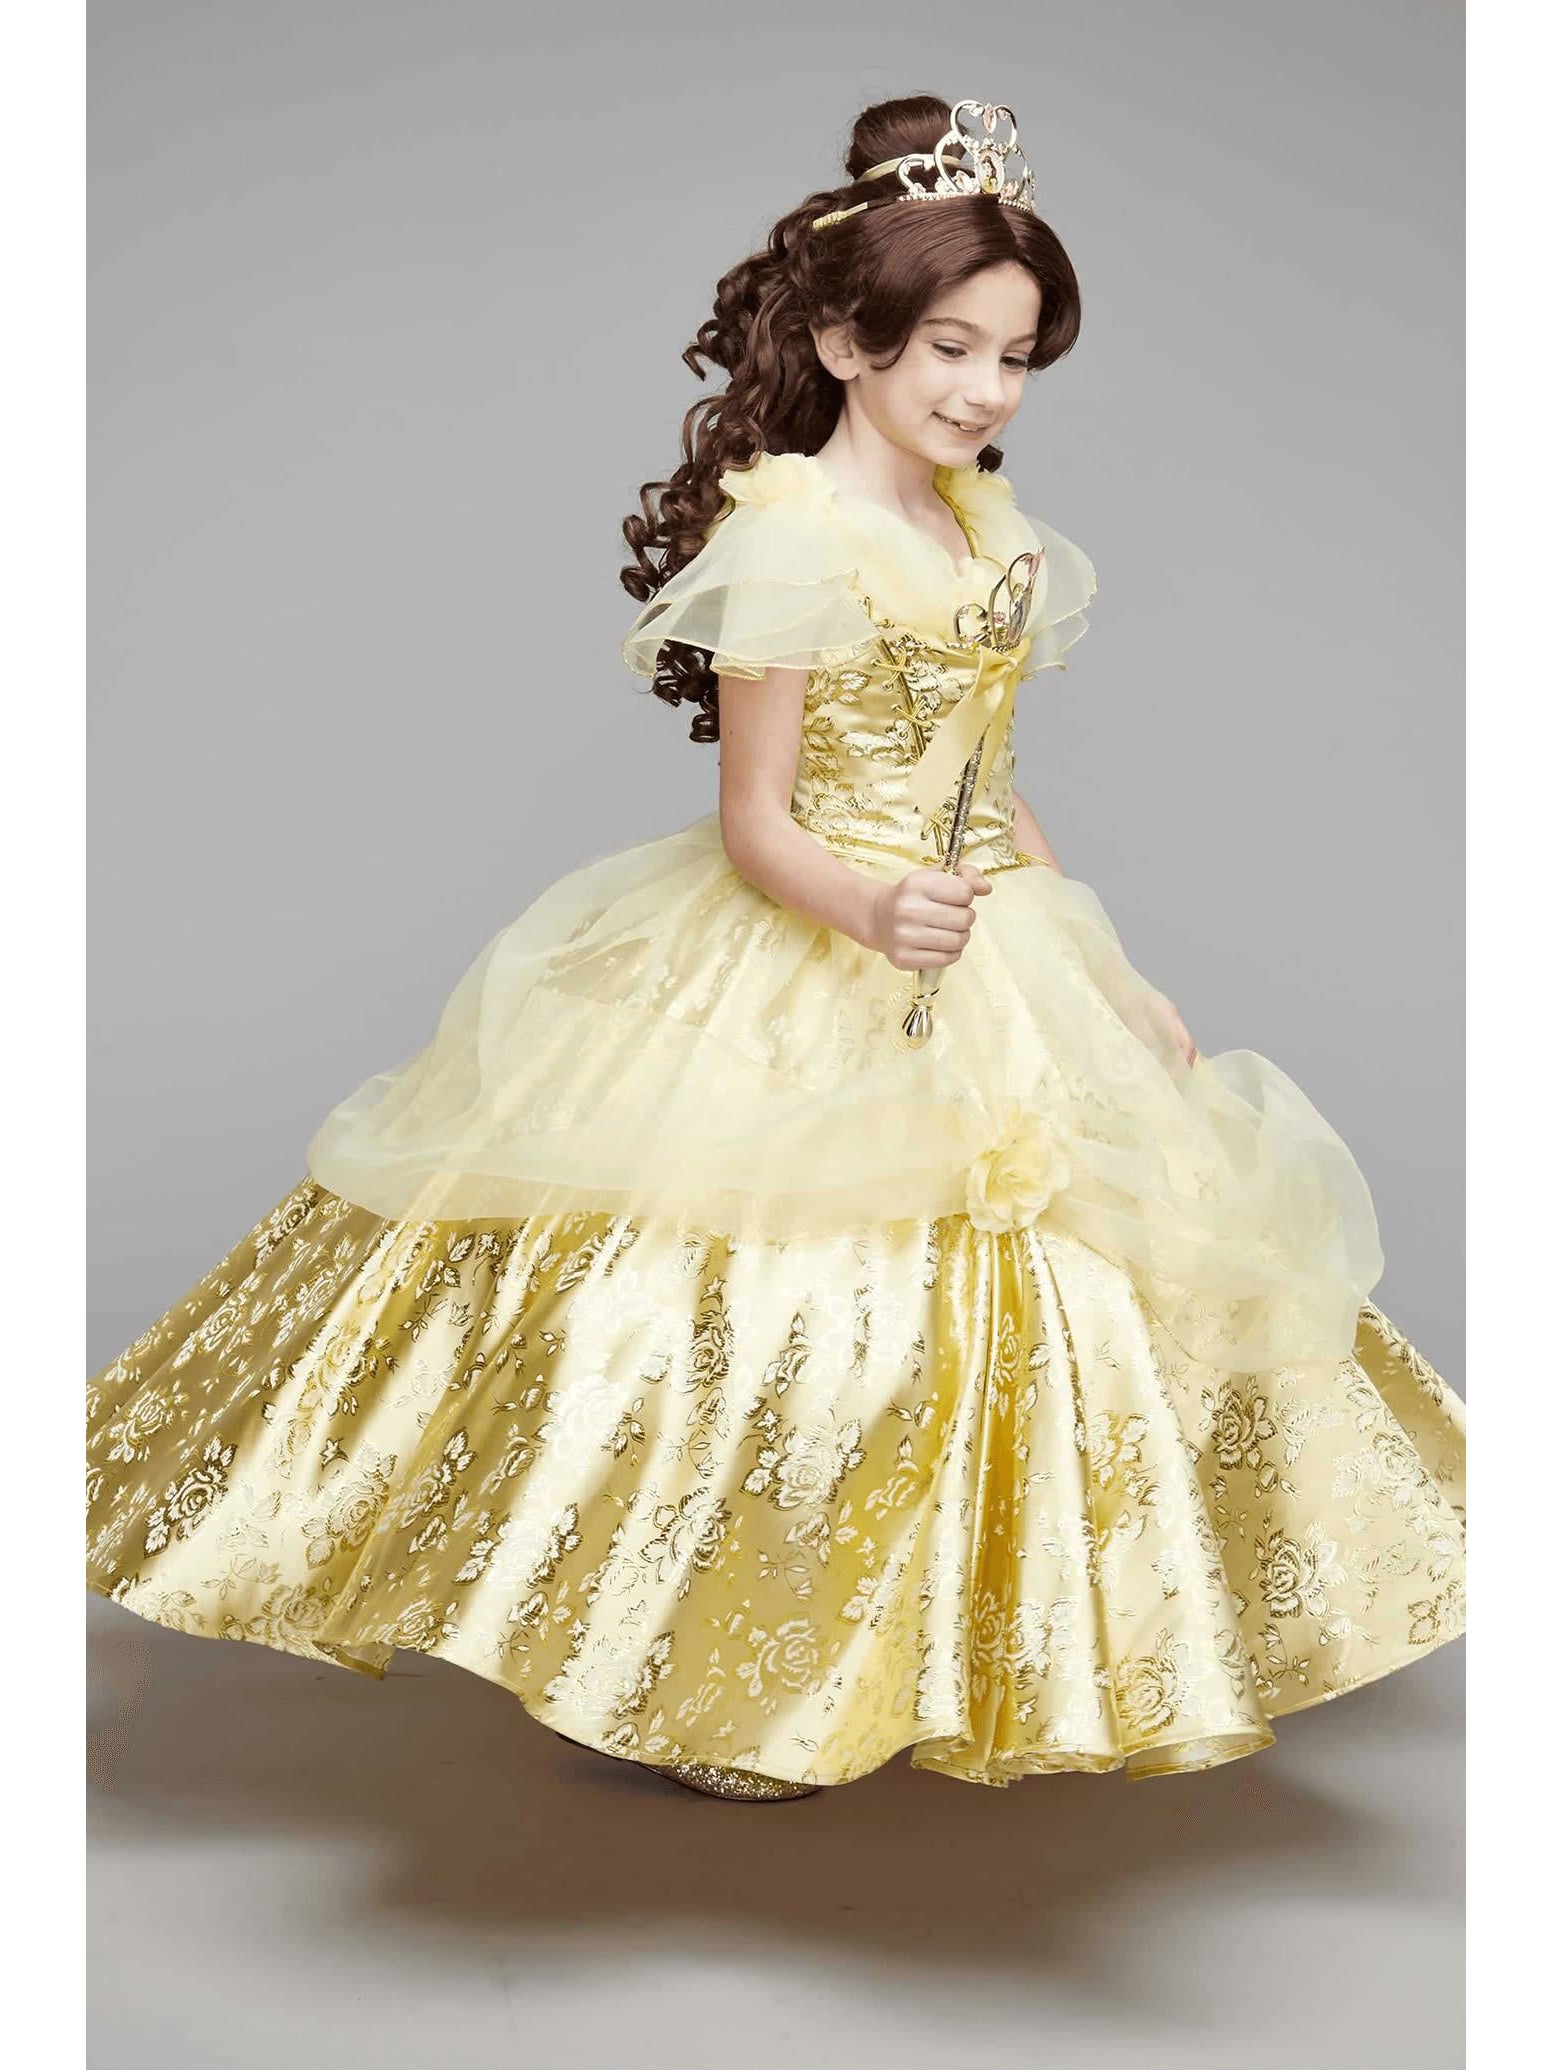 belle costume for girl